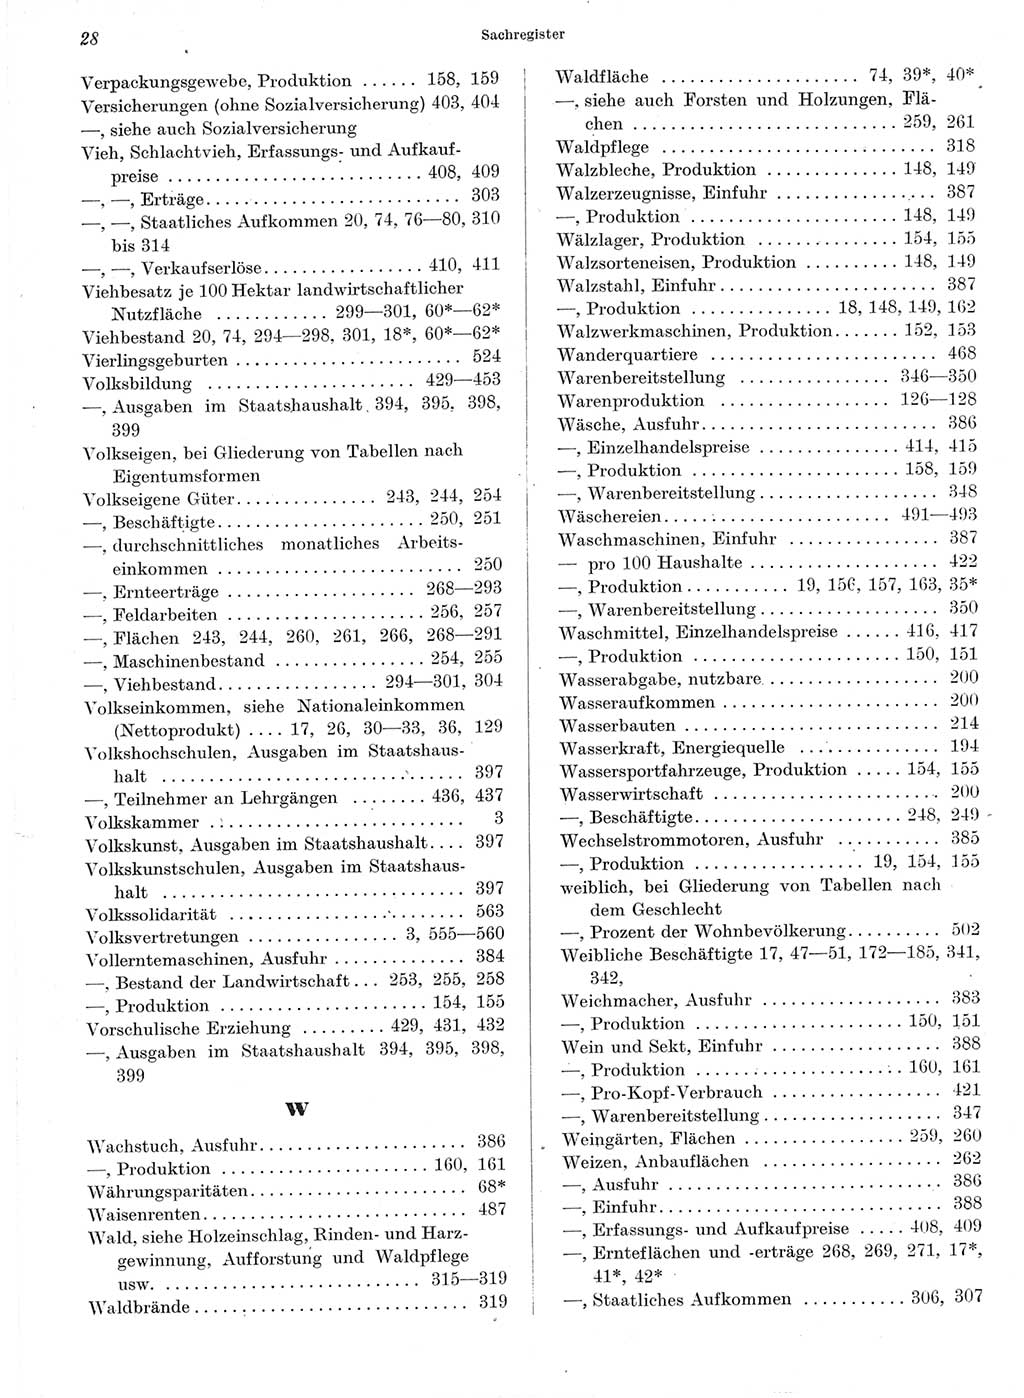 Statistisches Jahrbuch der Deutschen Demokratischen Republik (DDR) 1964, Seite 28 (Stat. Jb. DDR 1964, S. 28)